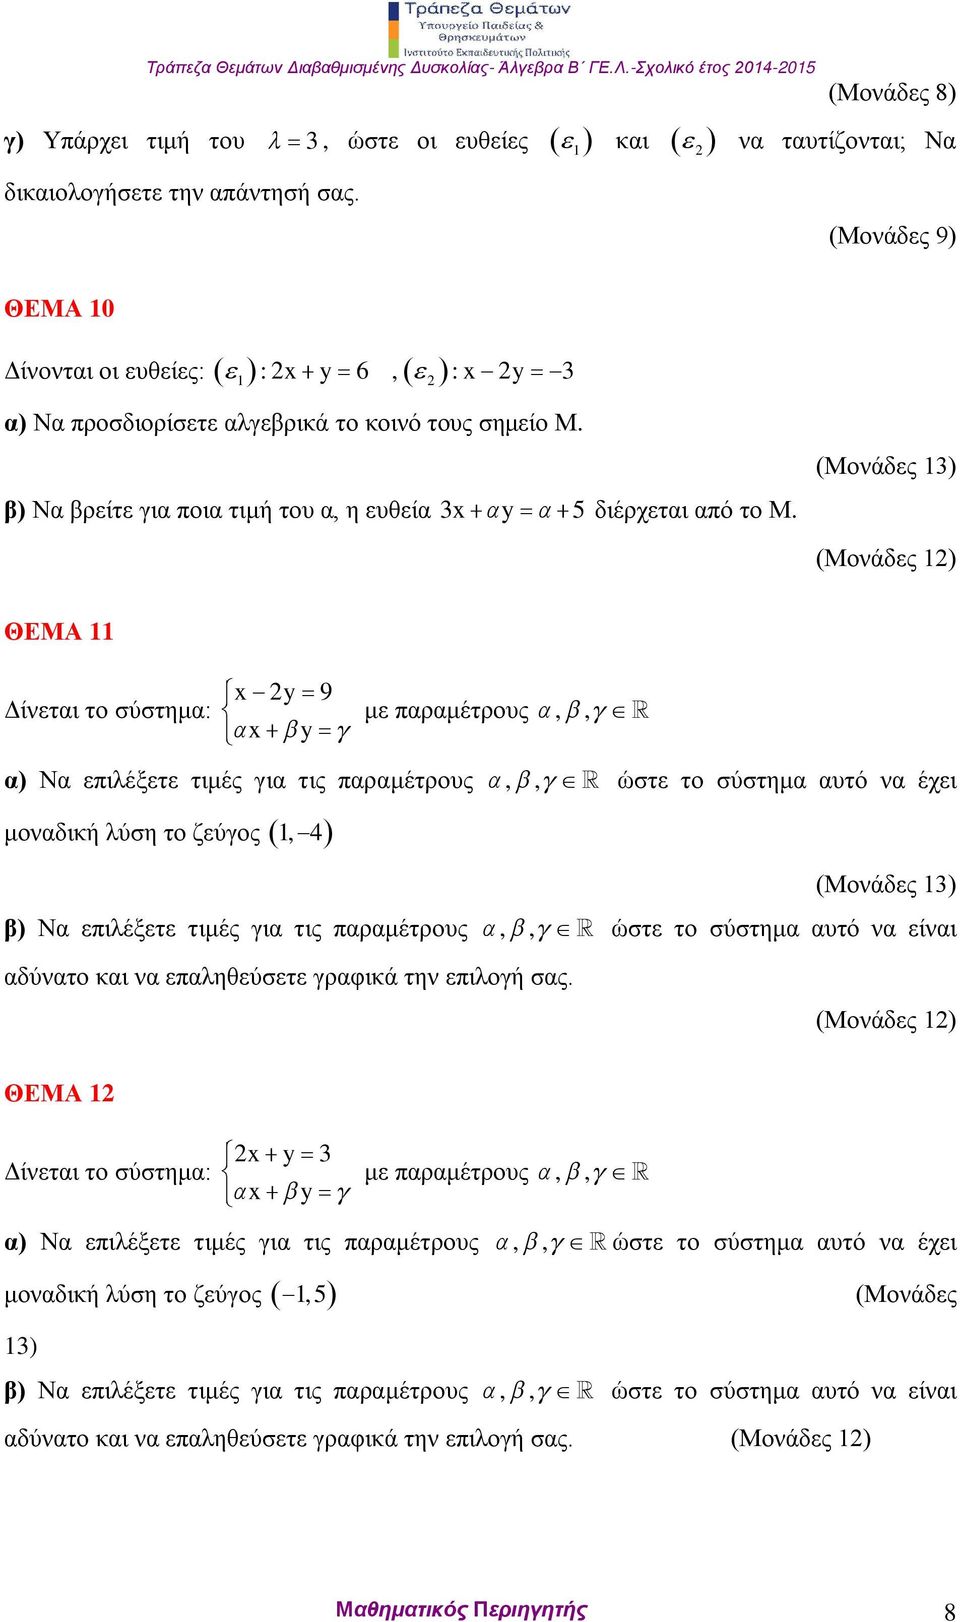 (Μονάδες 1) ΘΕΜΑ 11 Δίνεται το σύστημα: x y 9 x y με παραμέτρους,, α) Να επιλέξετε τιμές για τις παραμέτρους,, ώστε το σύστημα αυτό να έχει μοναδική λύση το ζεύγος 1, 4 β) Να επιλέξετε τιμές για τις